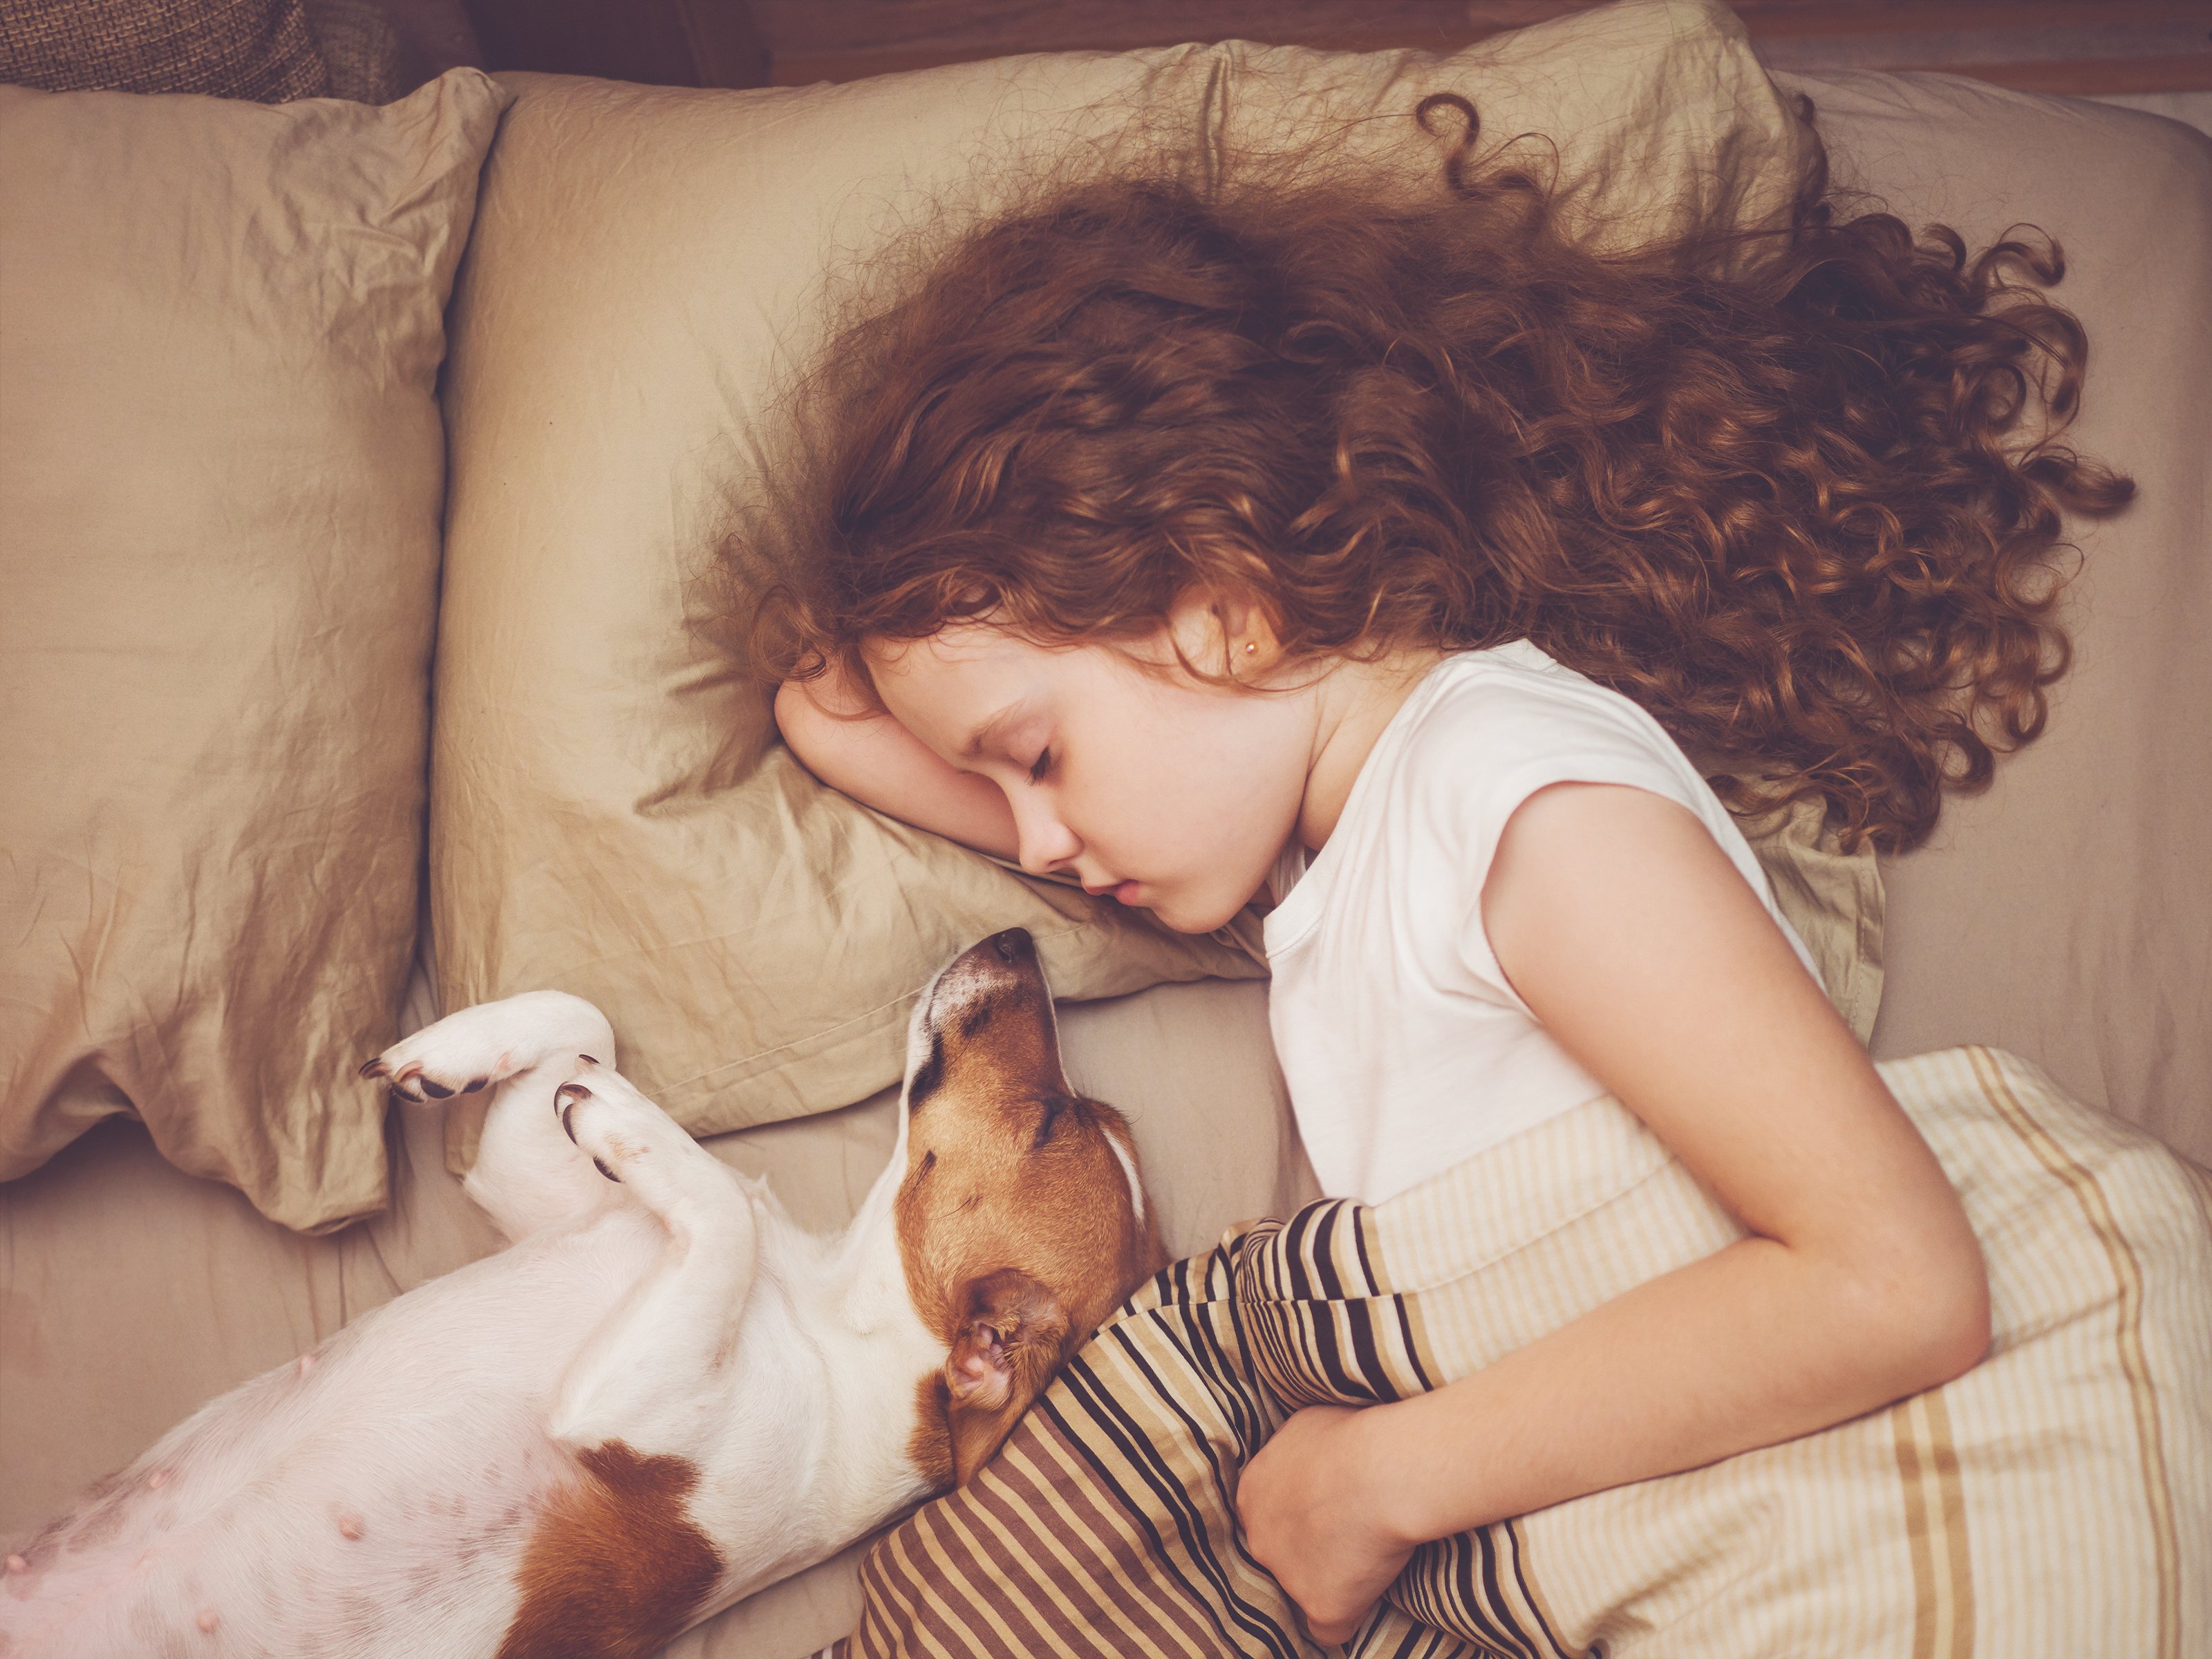 Niña con perro abrazada en la cama. Fuente: Shutterstock